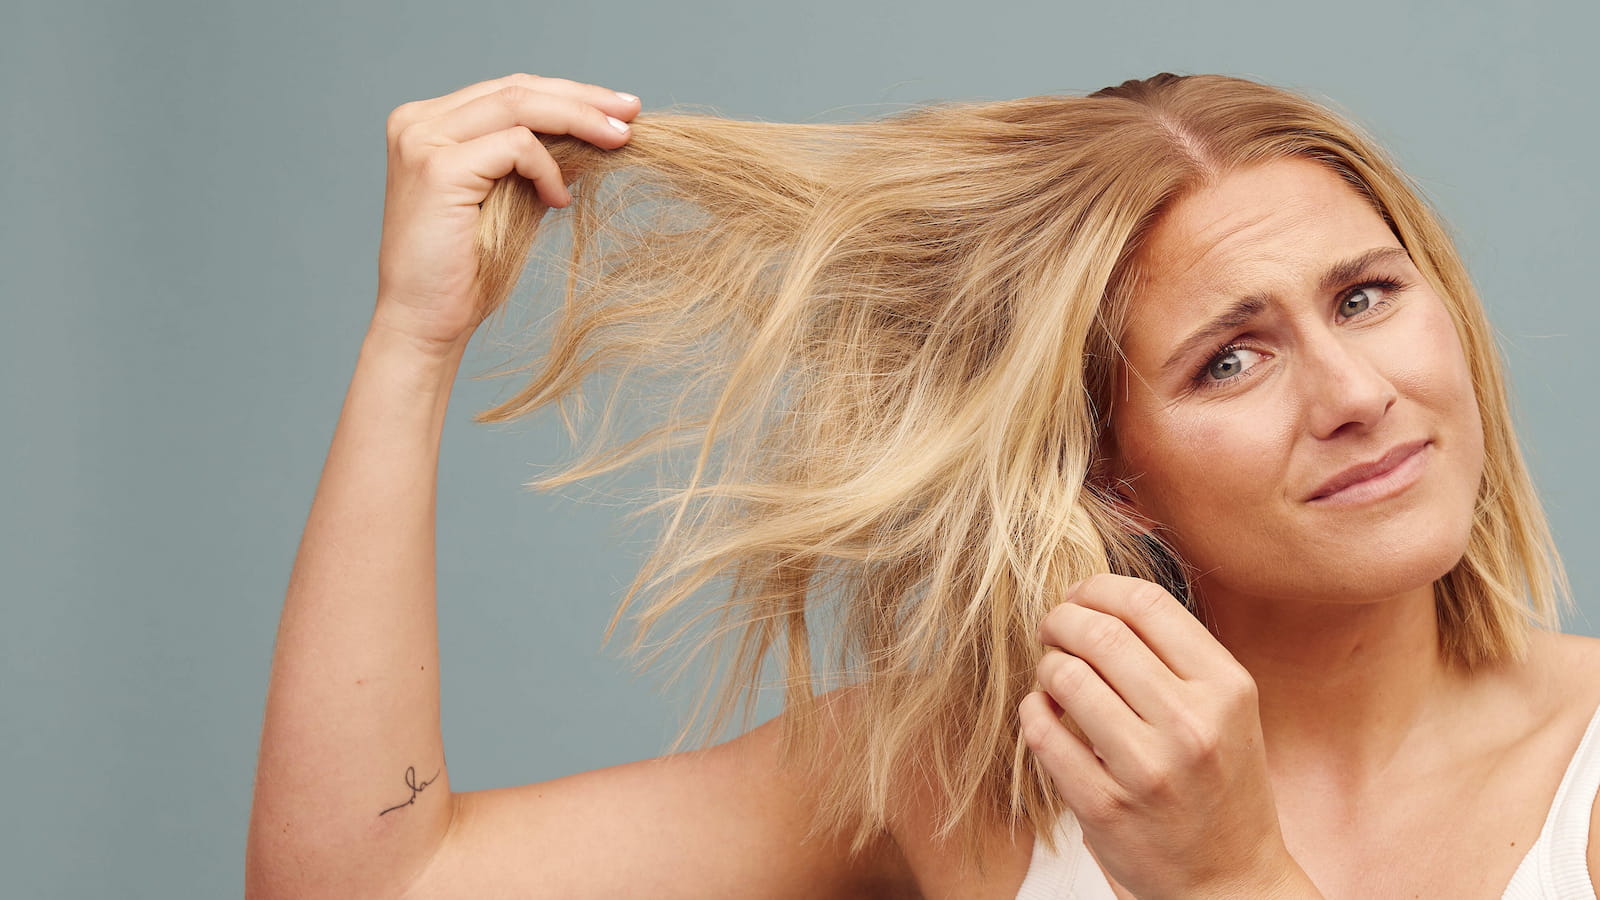 hovedlandet Uundgåelig Ray Sådan undgår du et ødelagt hår efter afblegning: 10 nemme tips!–Hairlust